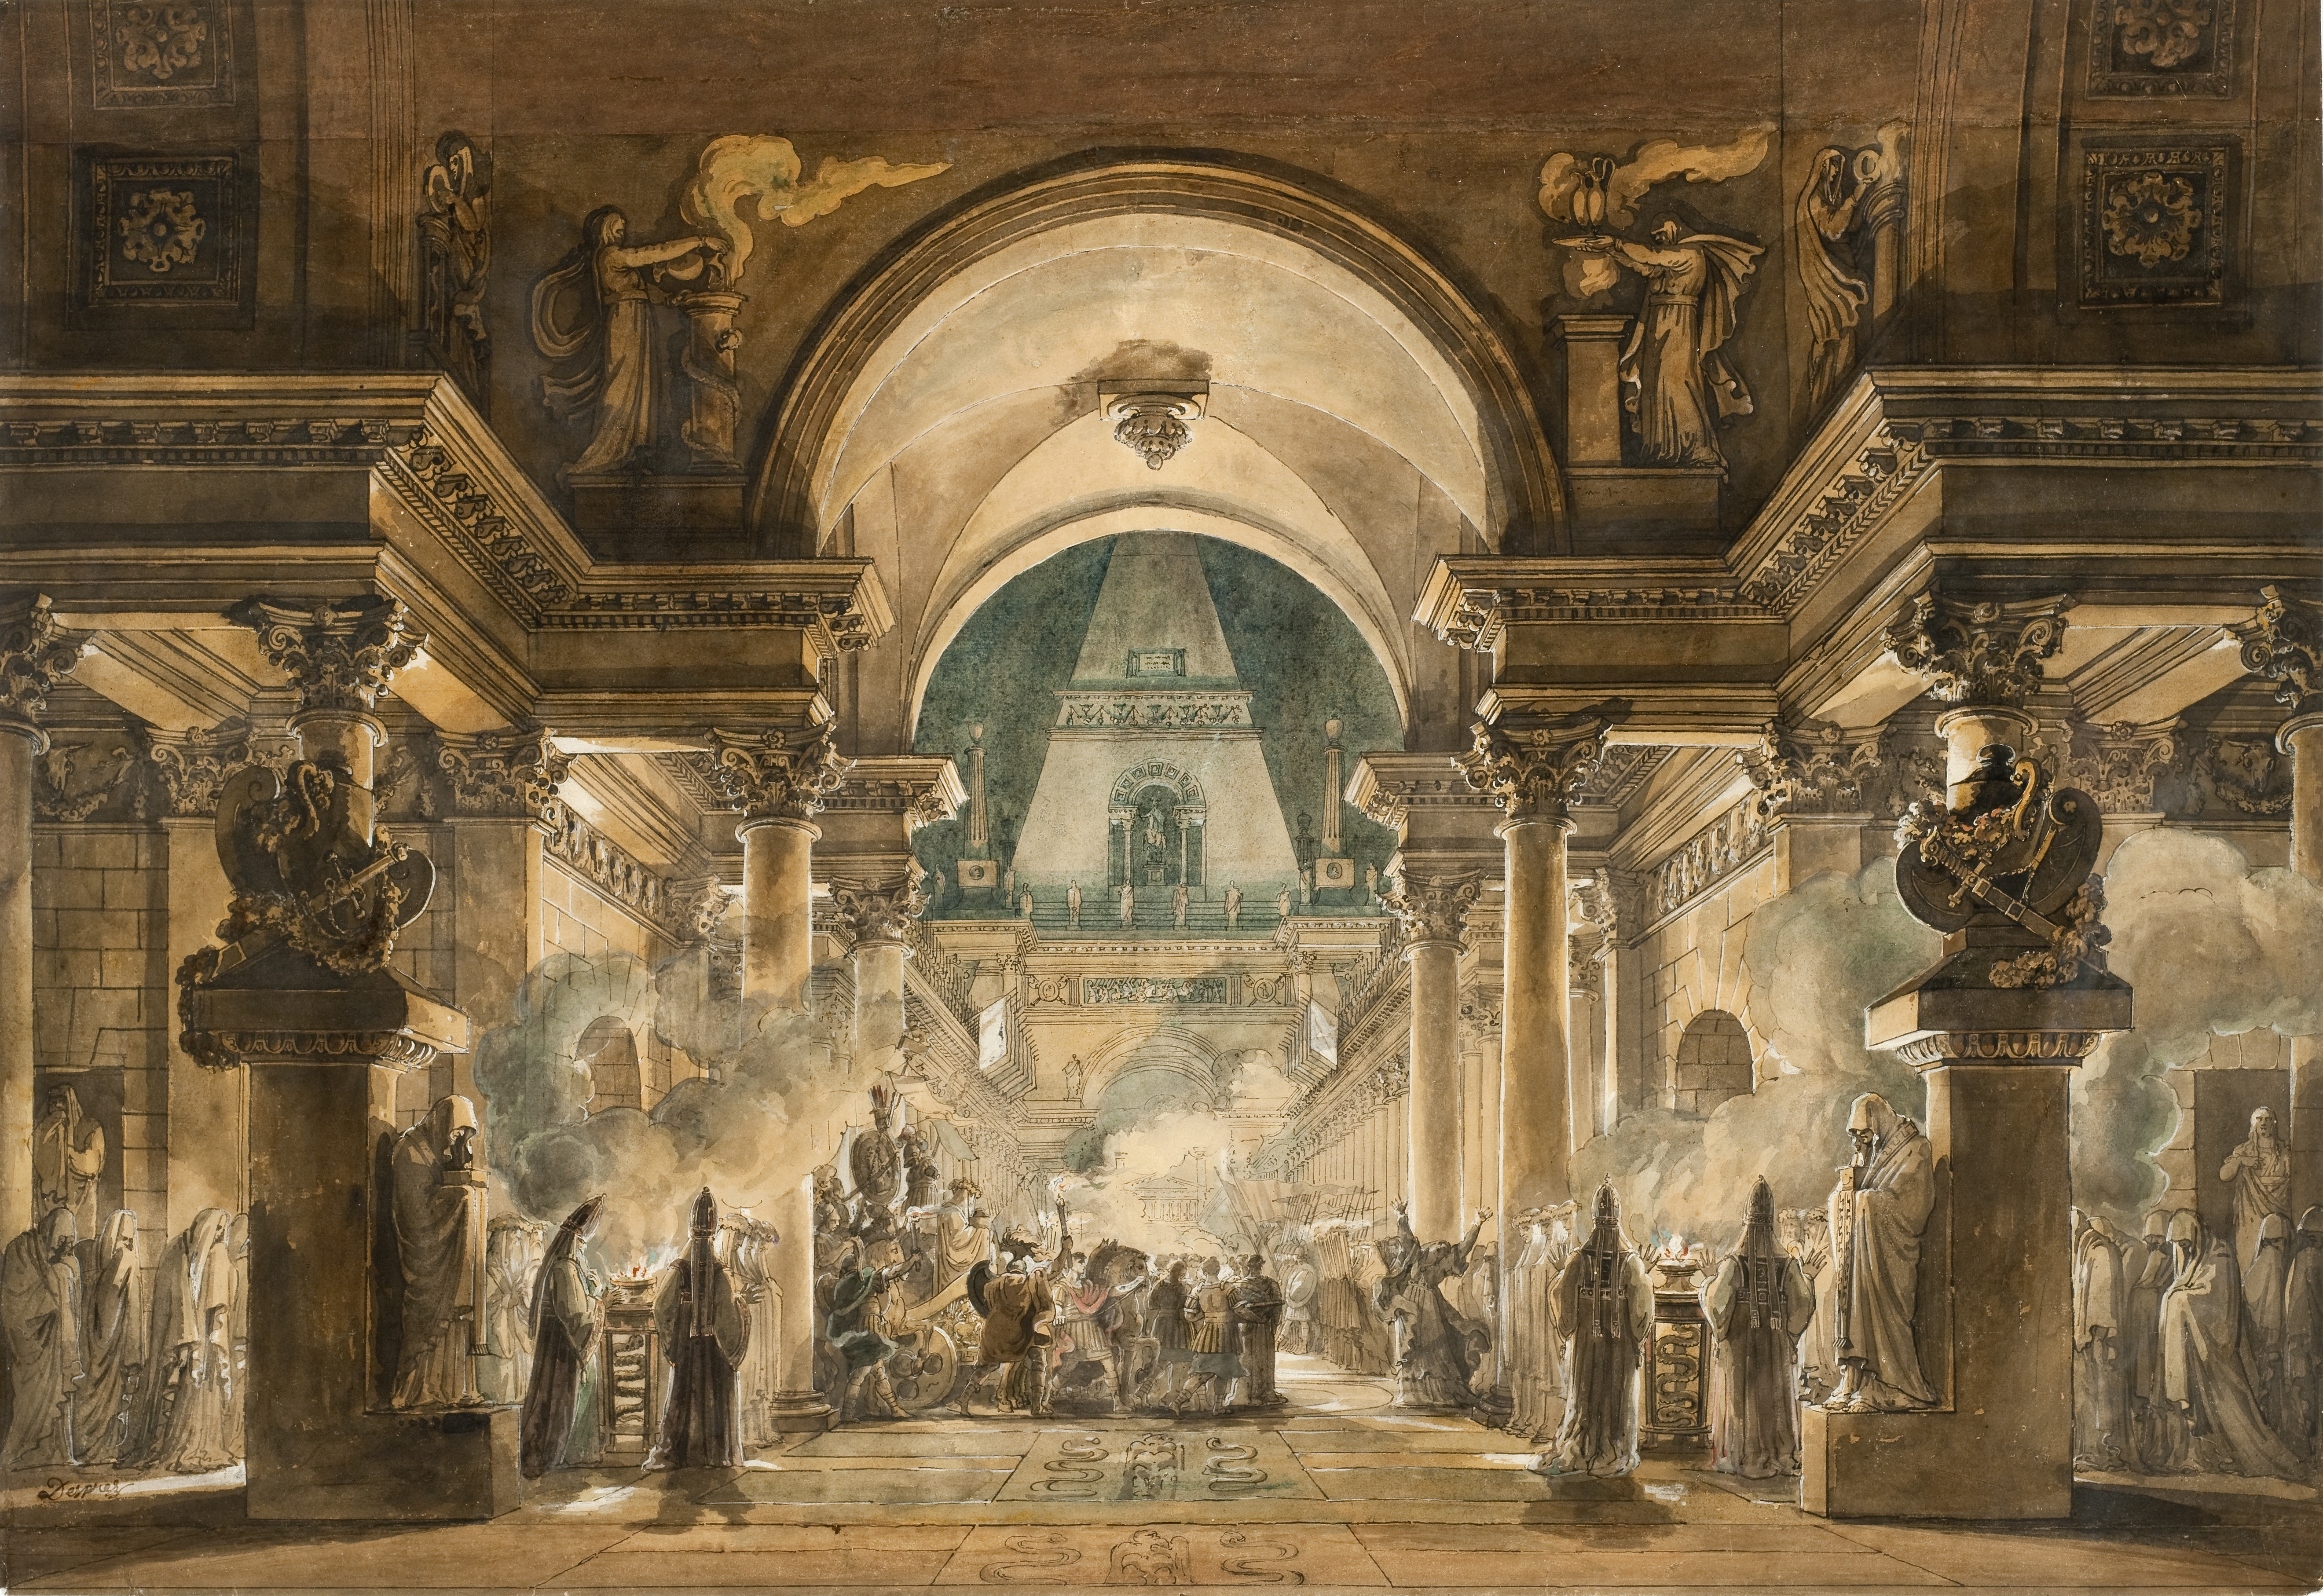 The Funeral Procession of Agamemnon, Louis Jean Desprez, 1787